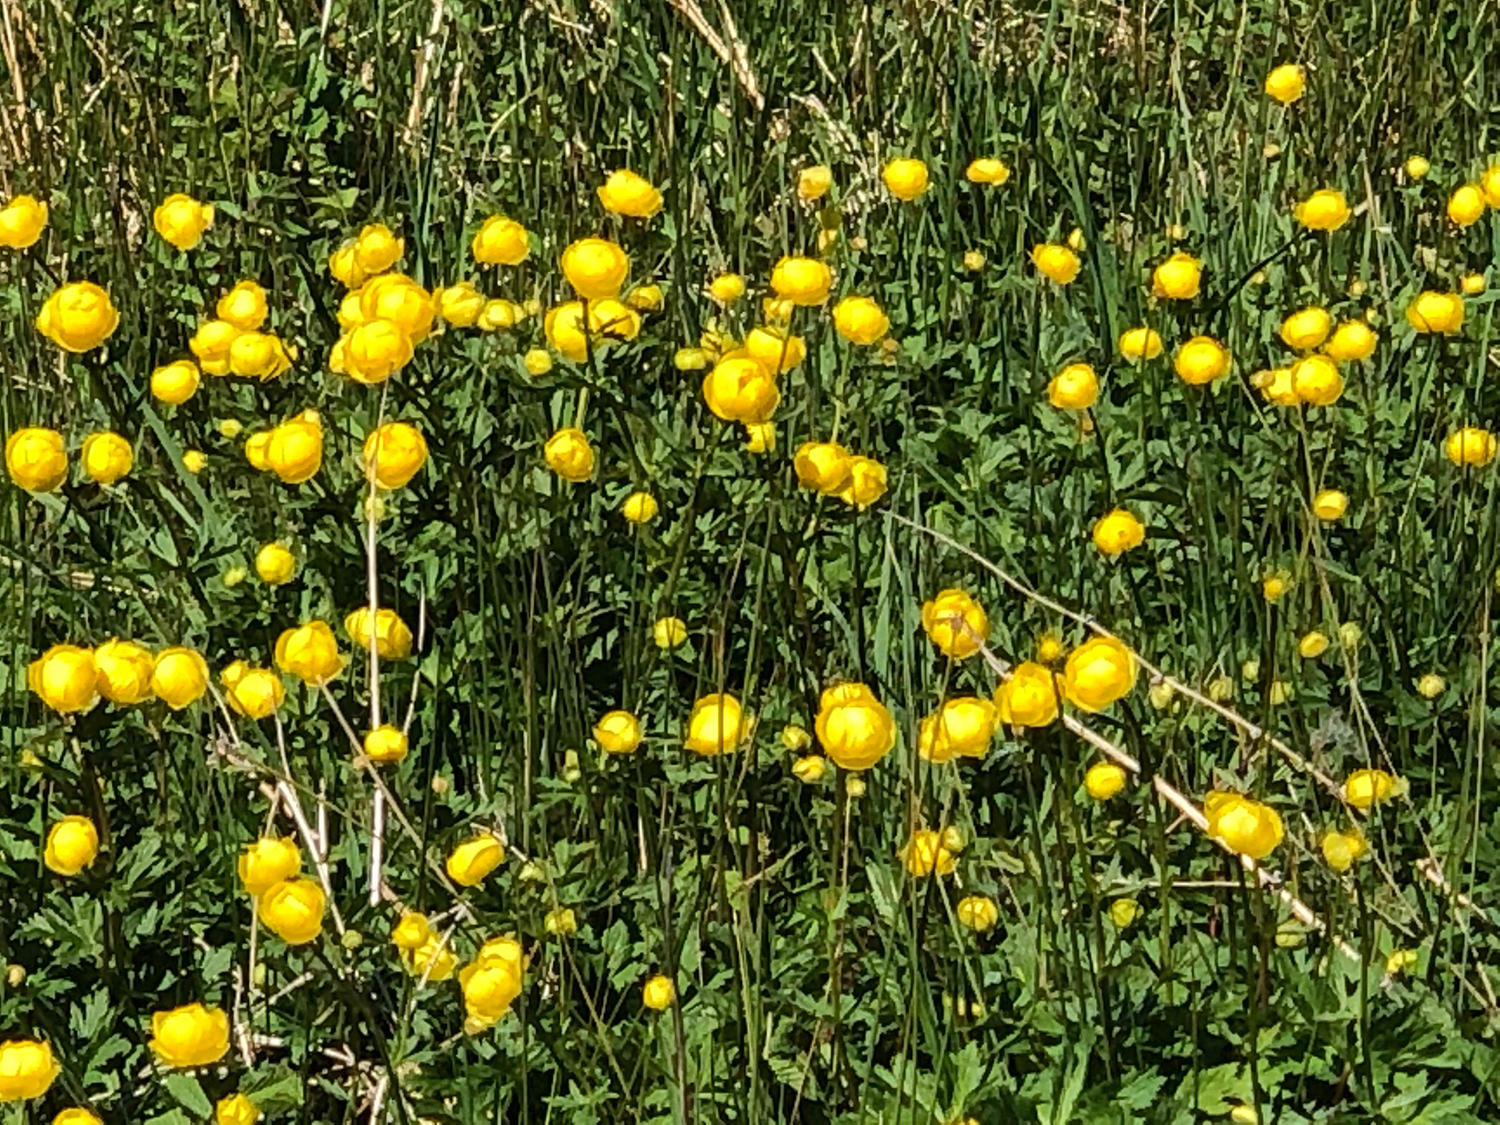 Globeflower growing in the fields